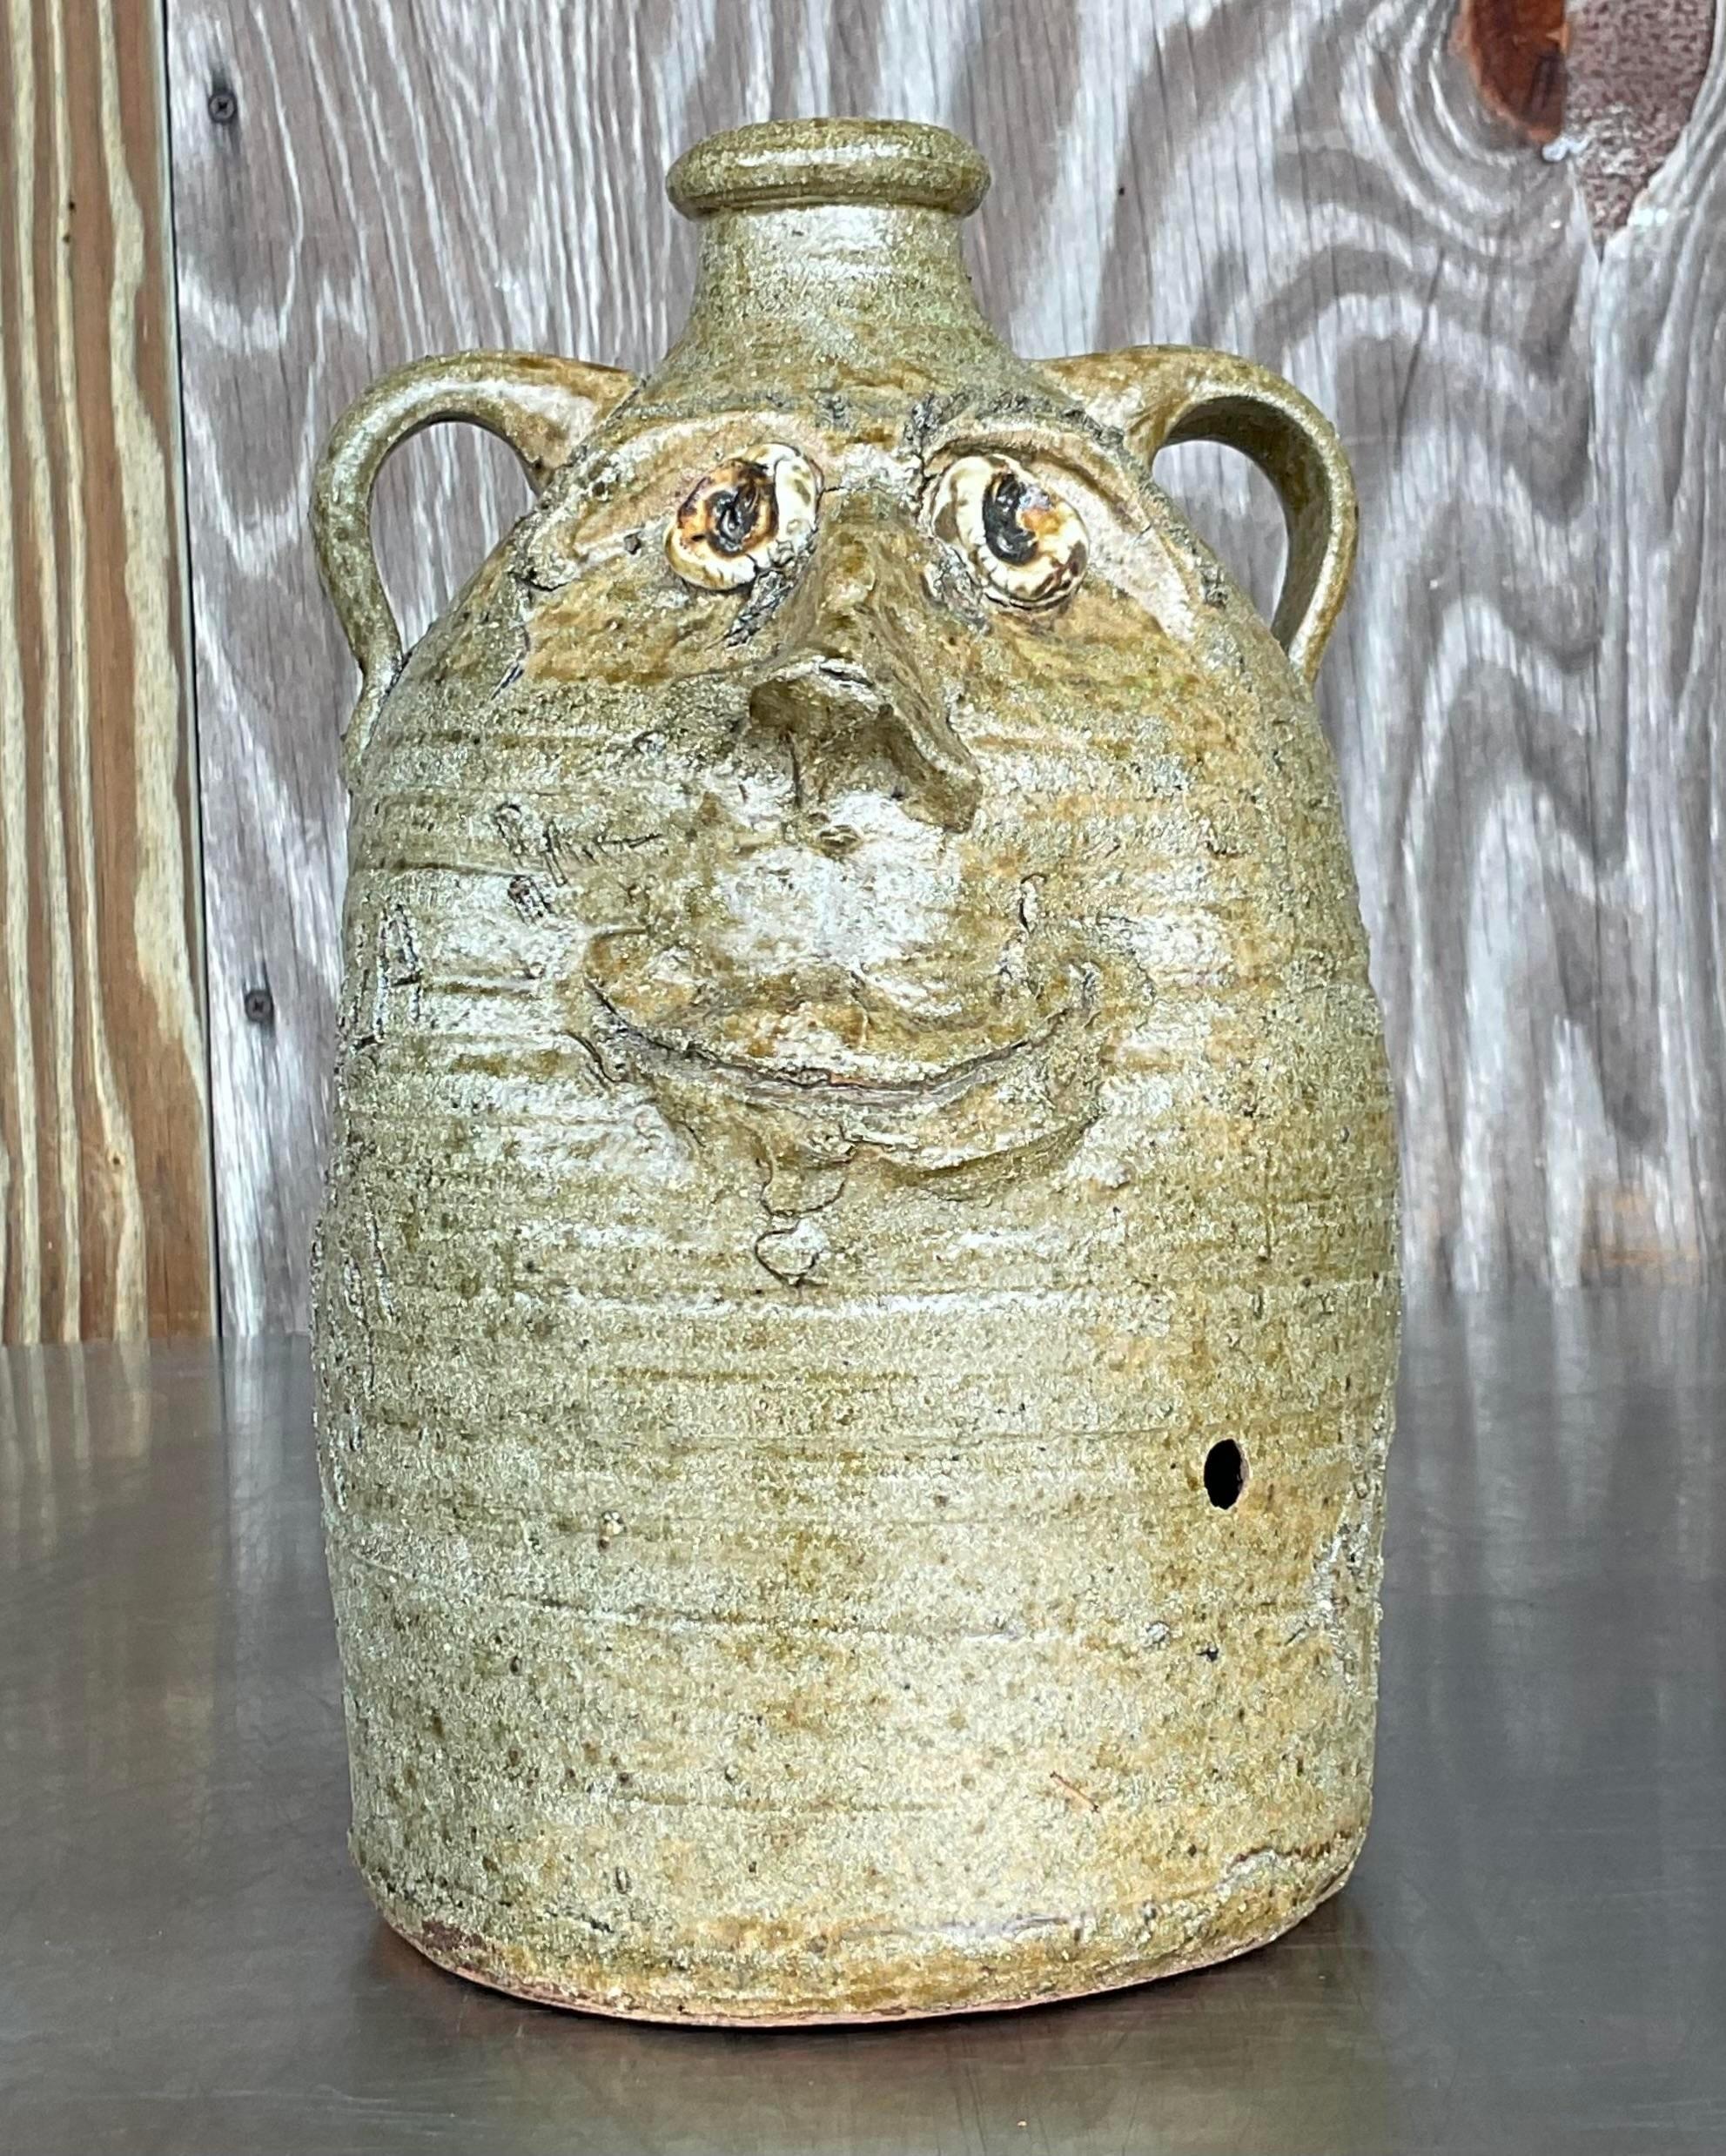 Peppen Sie Ihre Einrichtung mit dieser einzigartigen Vintage Boho Signed Studio Pottery Two-Faced Kanne auf.
Das von einem erfahrenen Künstler handgefertigte, einzigartige Design spiegelt die Schönheit der Natur wider und verleiht jedem Raum einen